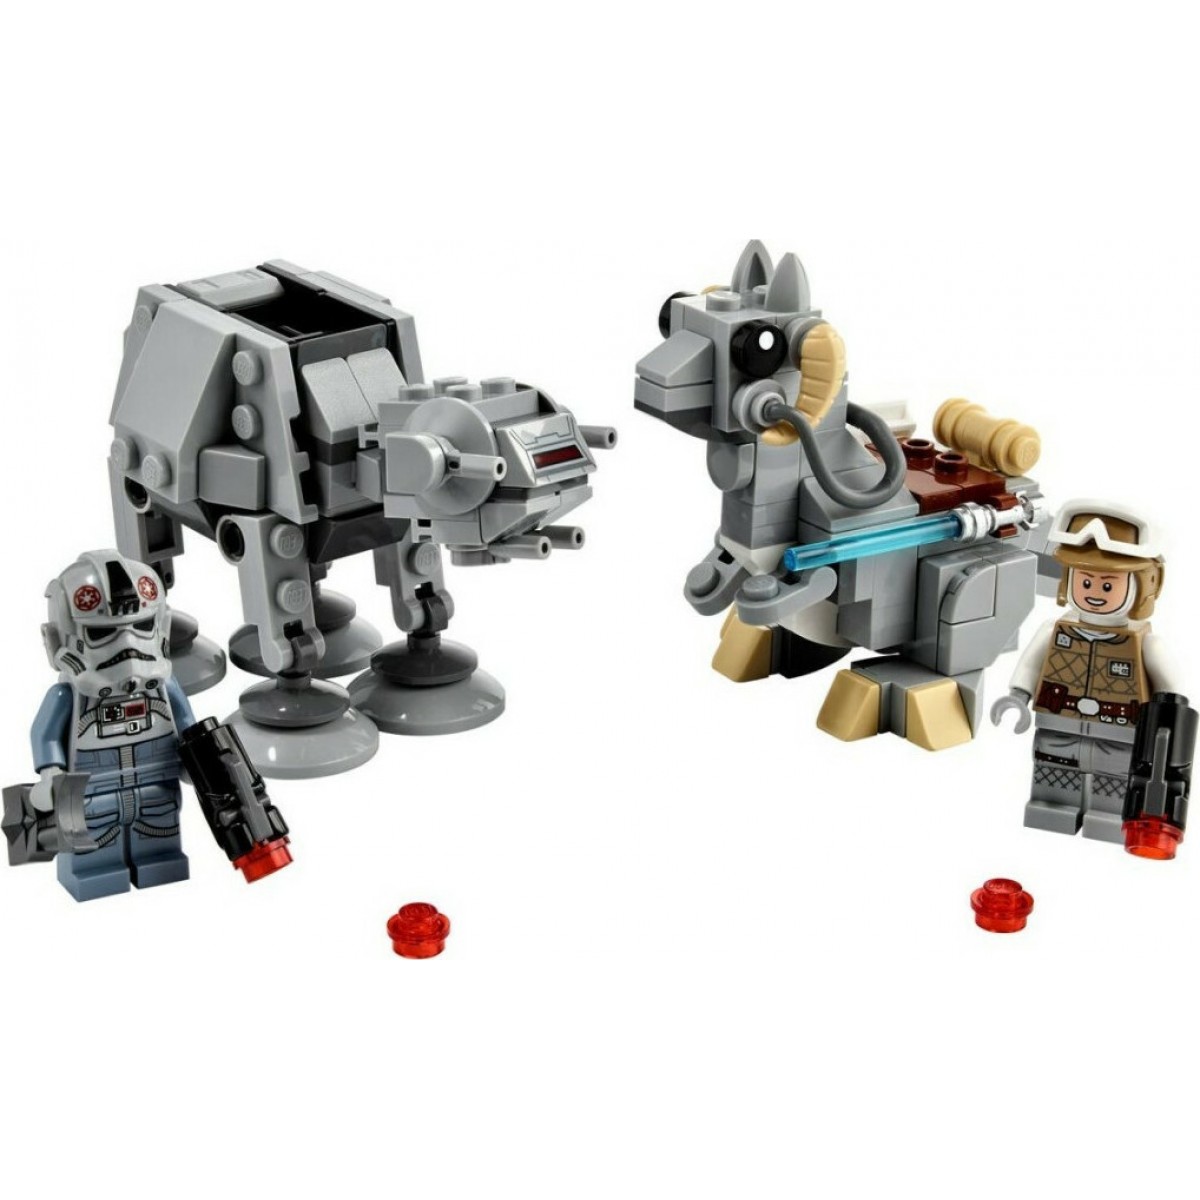 LEGO STAR WARS 75298 AT-AT VS TAUNTAUN MICROFIGHTERS